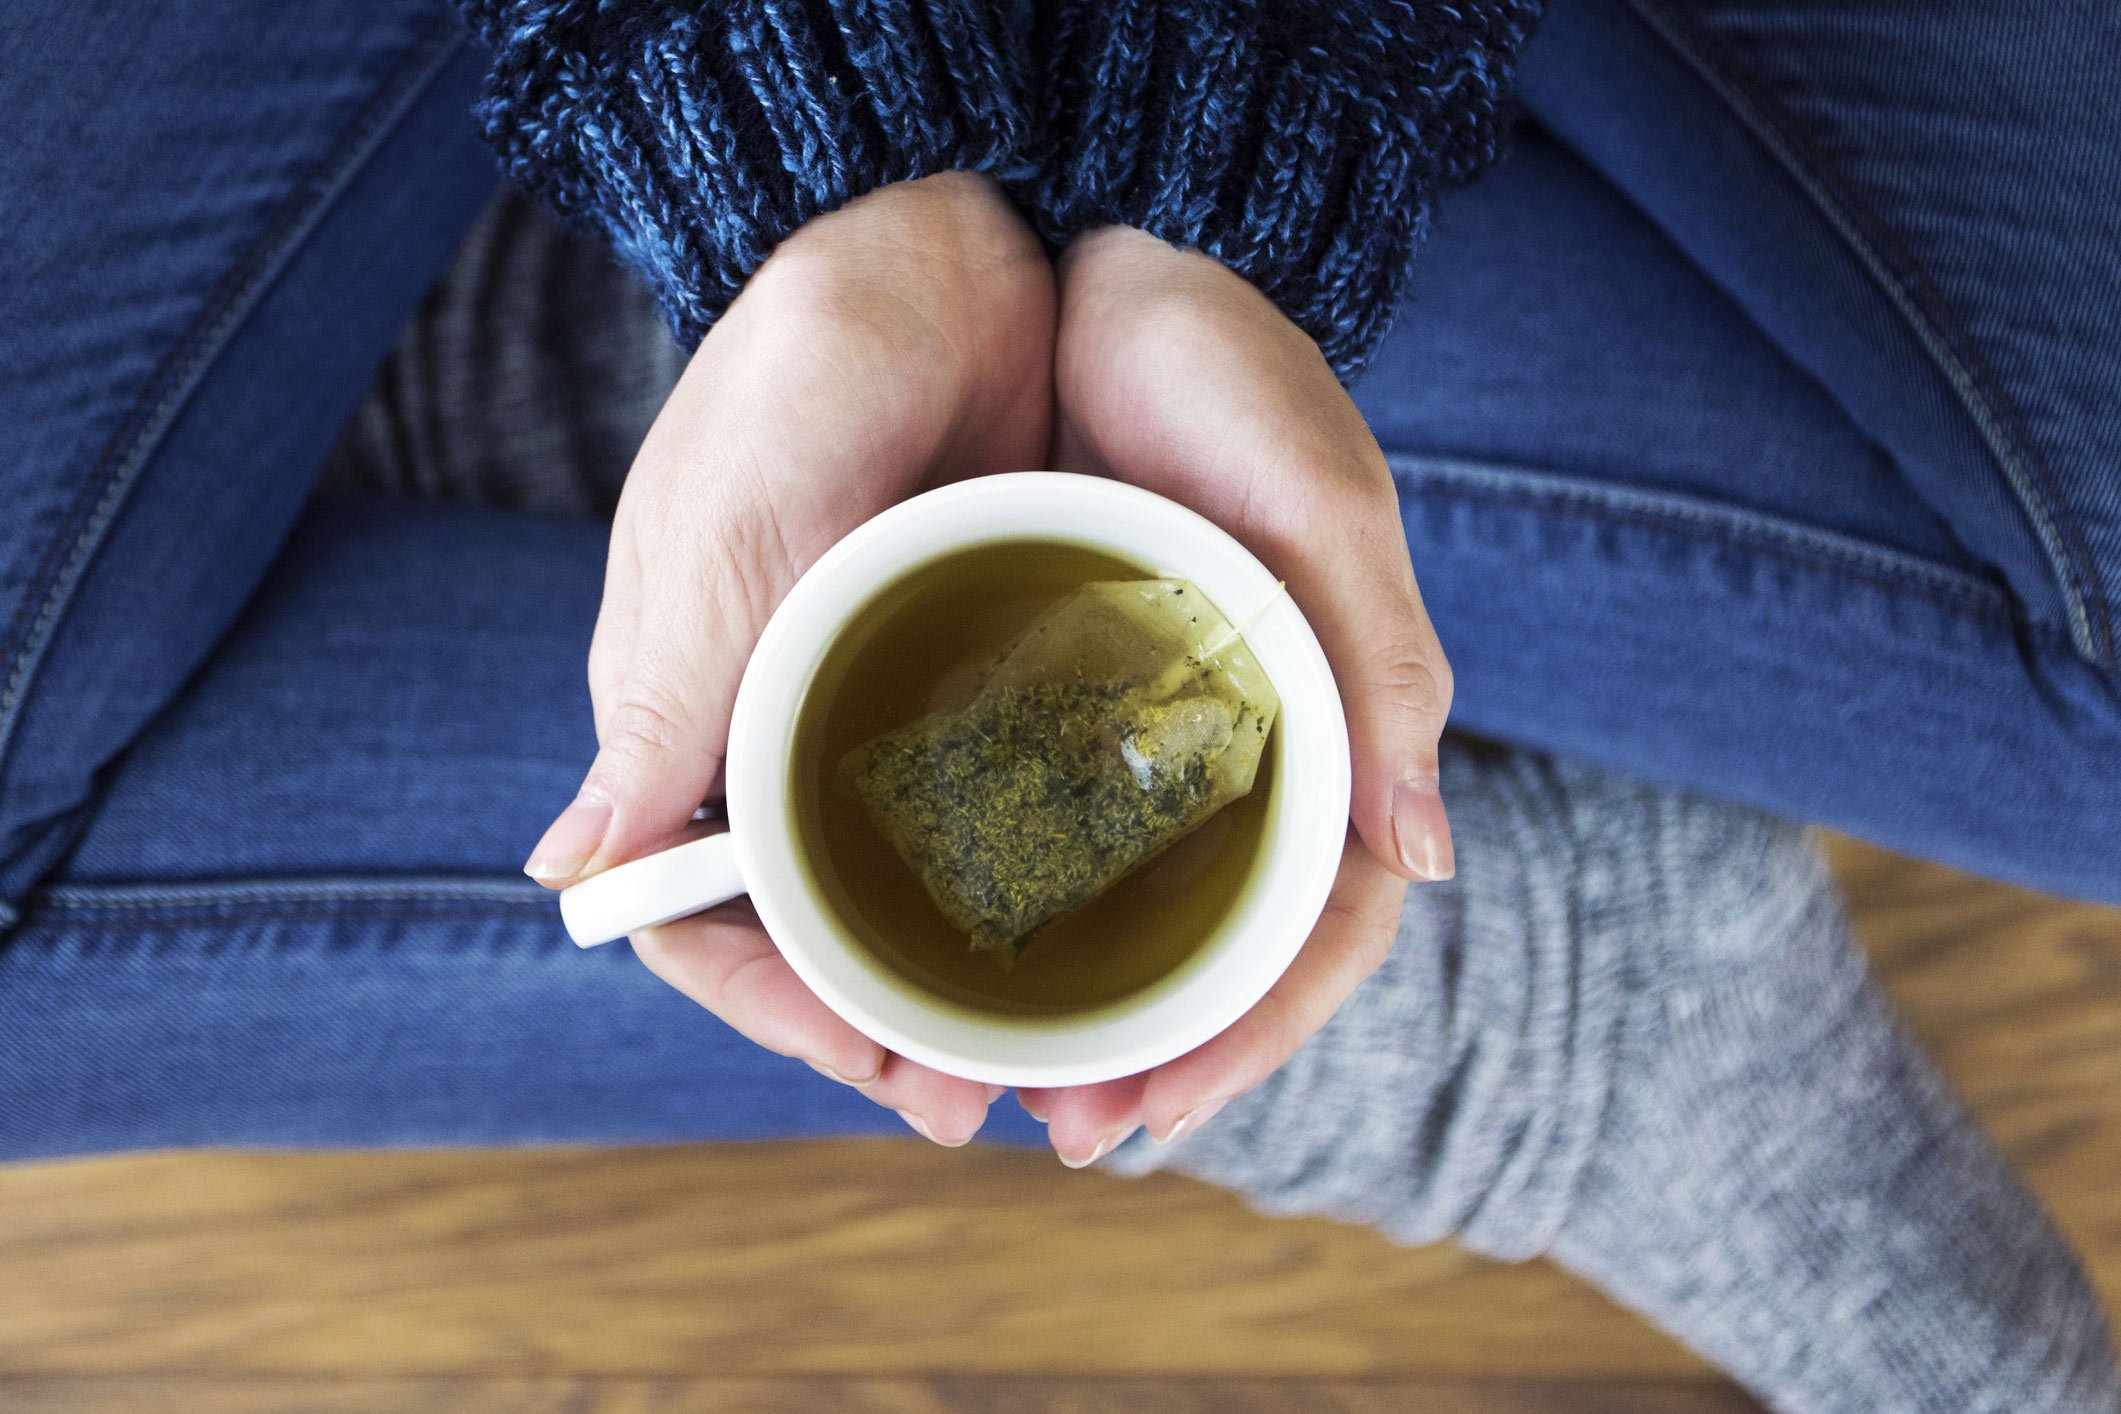 Top detoxifying foods: Green tea